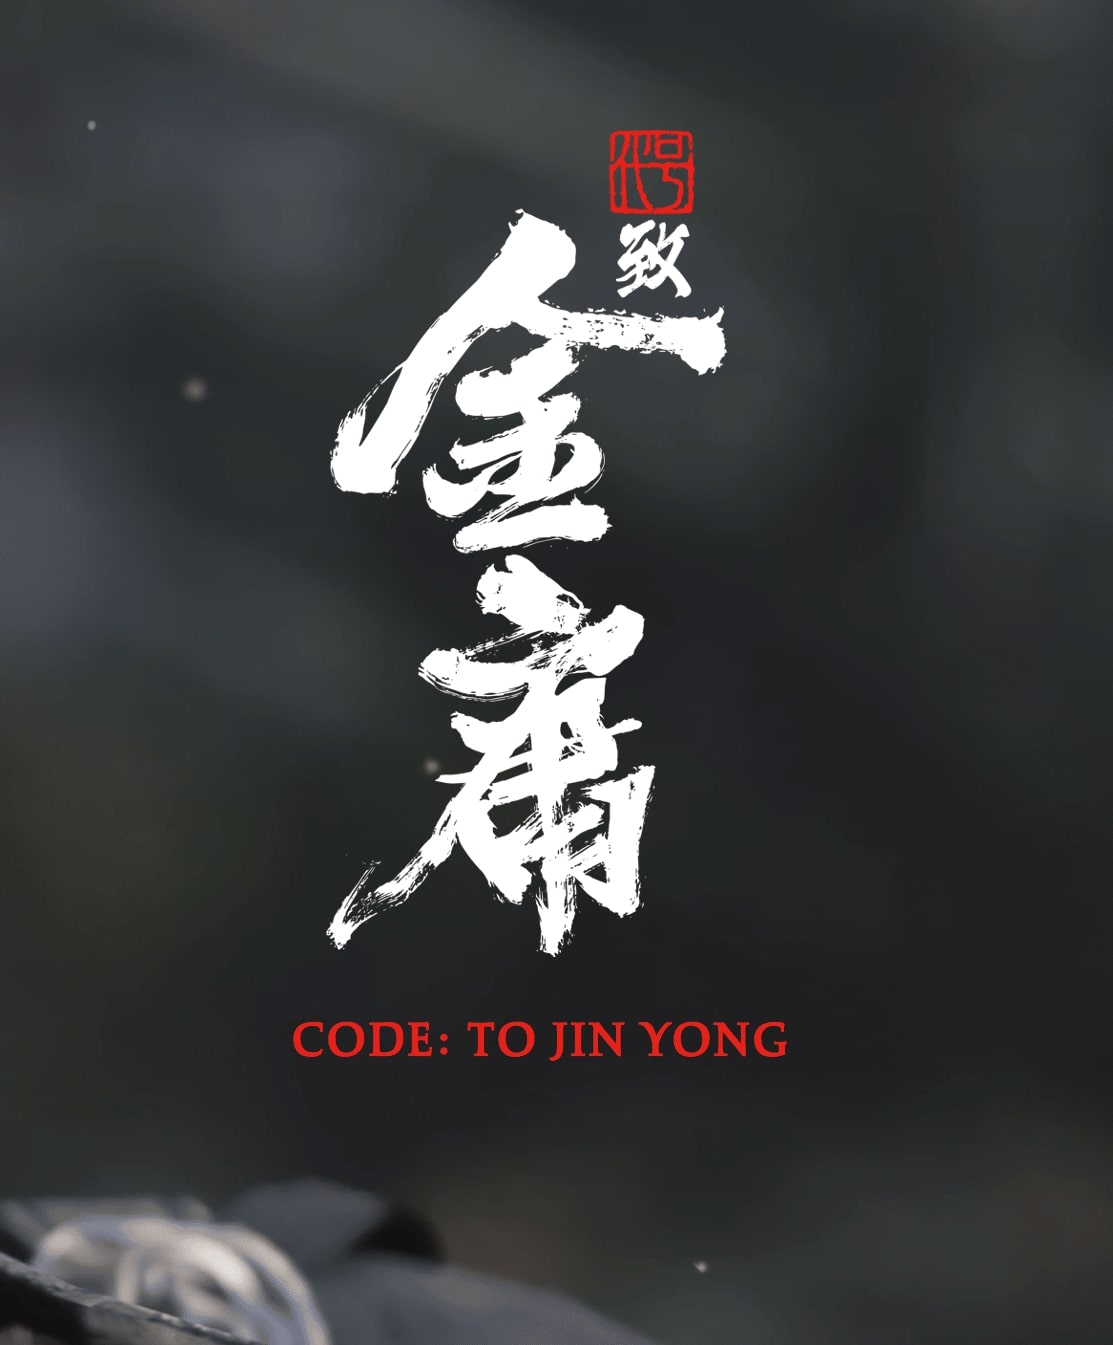 Code: To Jin Yong